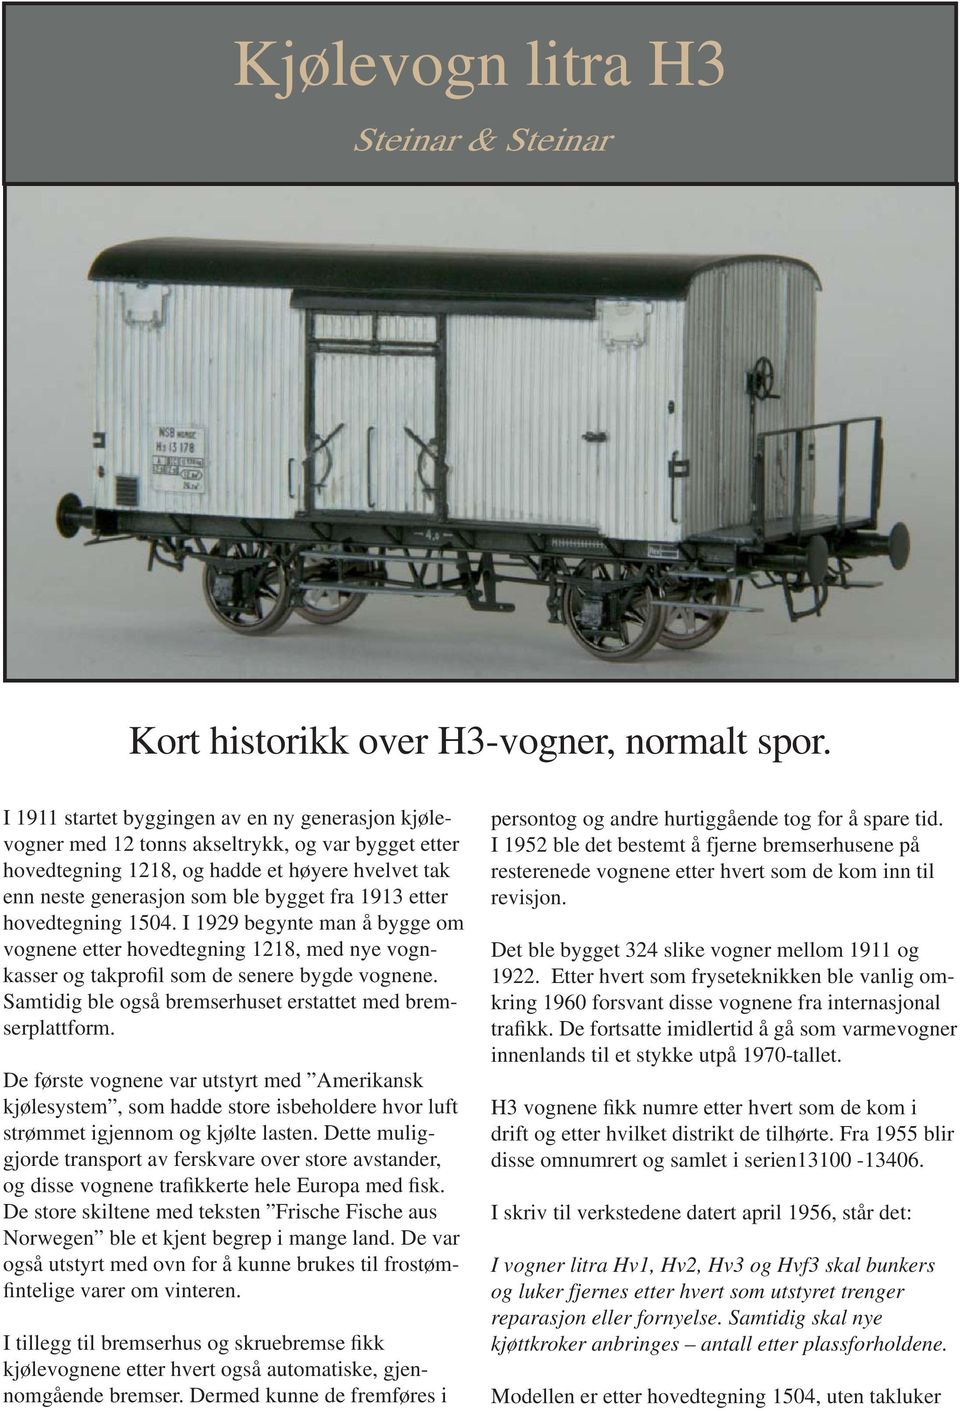 etter hovedtegning 1504. I 1929 begynte man å bygge om vognene etter hovedtegning 1218, med nye vognkasser og takprofil som de senere bygde vognene.